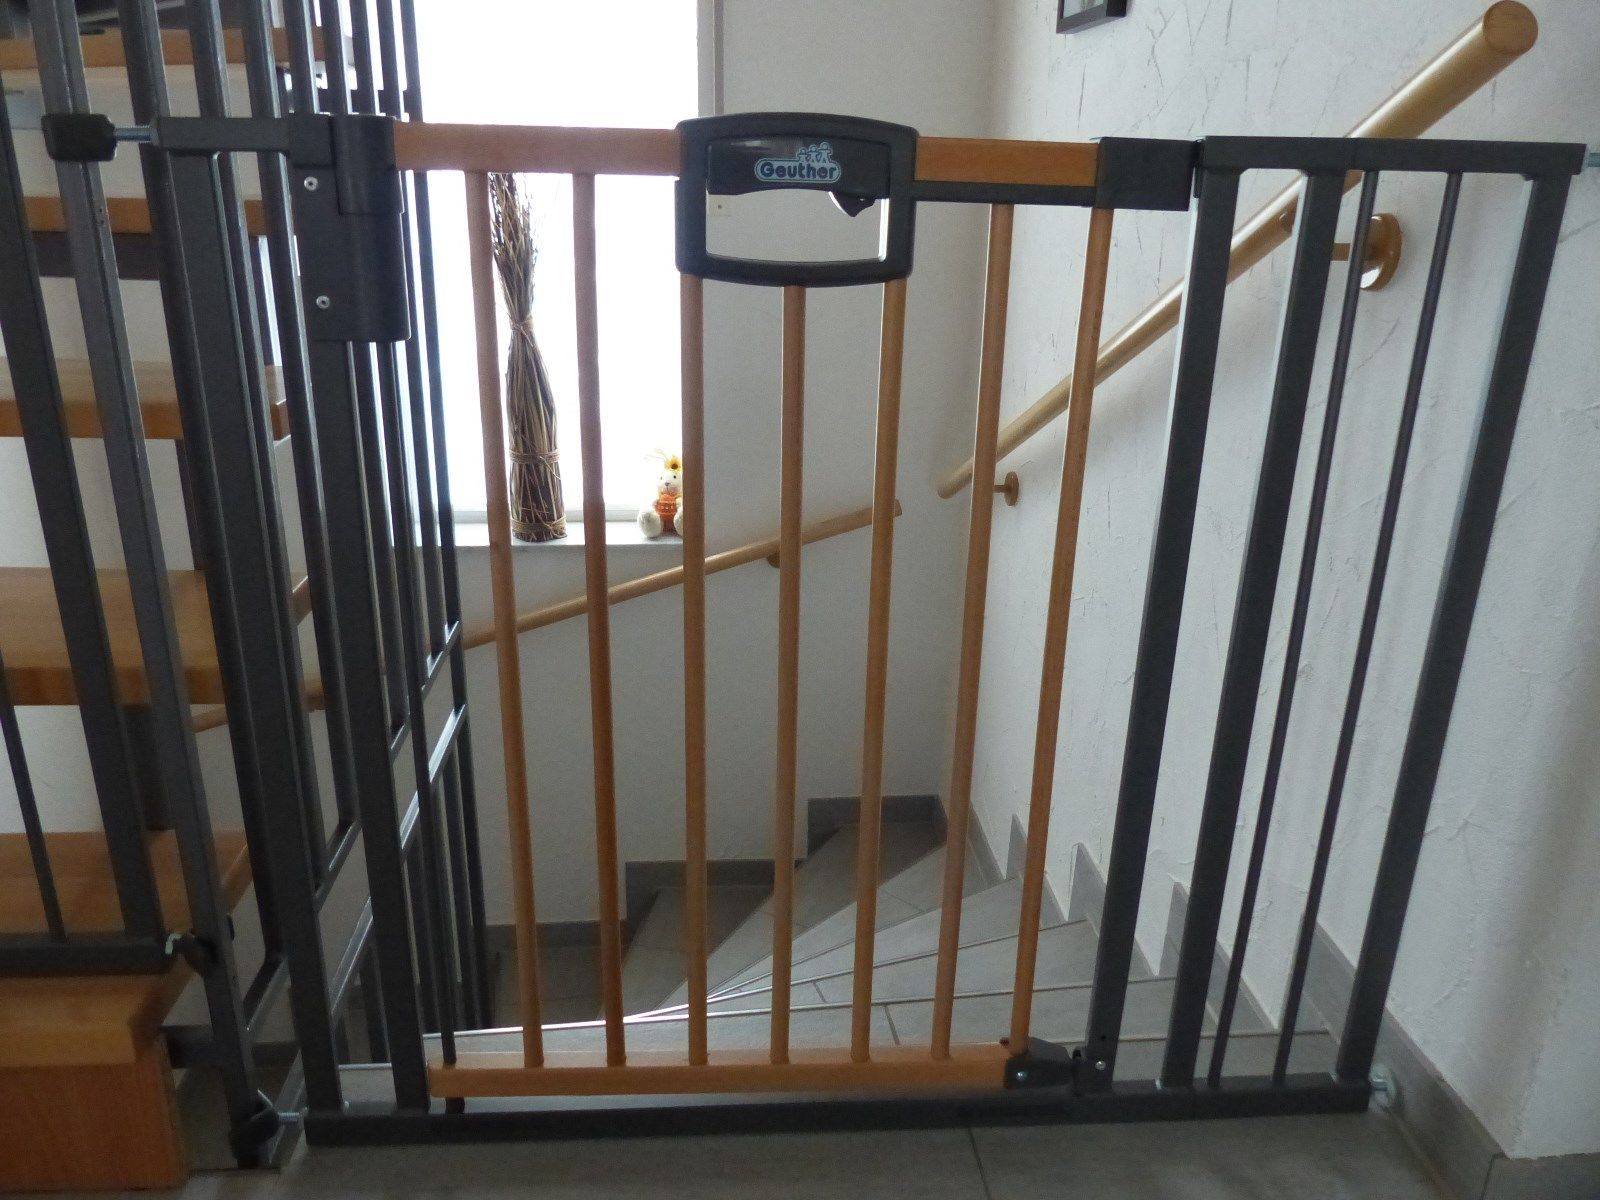 Ворота безопасности для детей на лестницу своими руками, как сделать